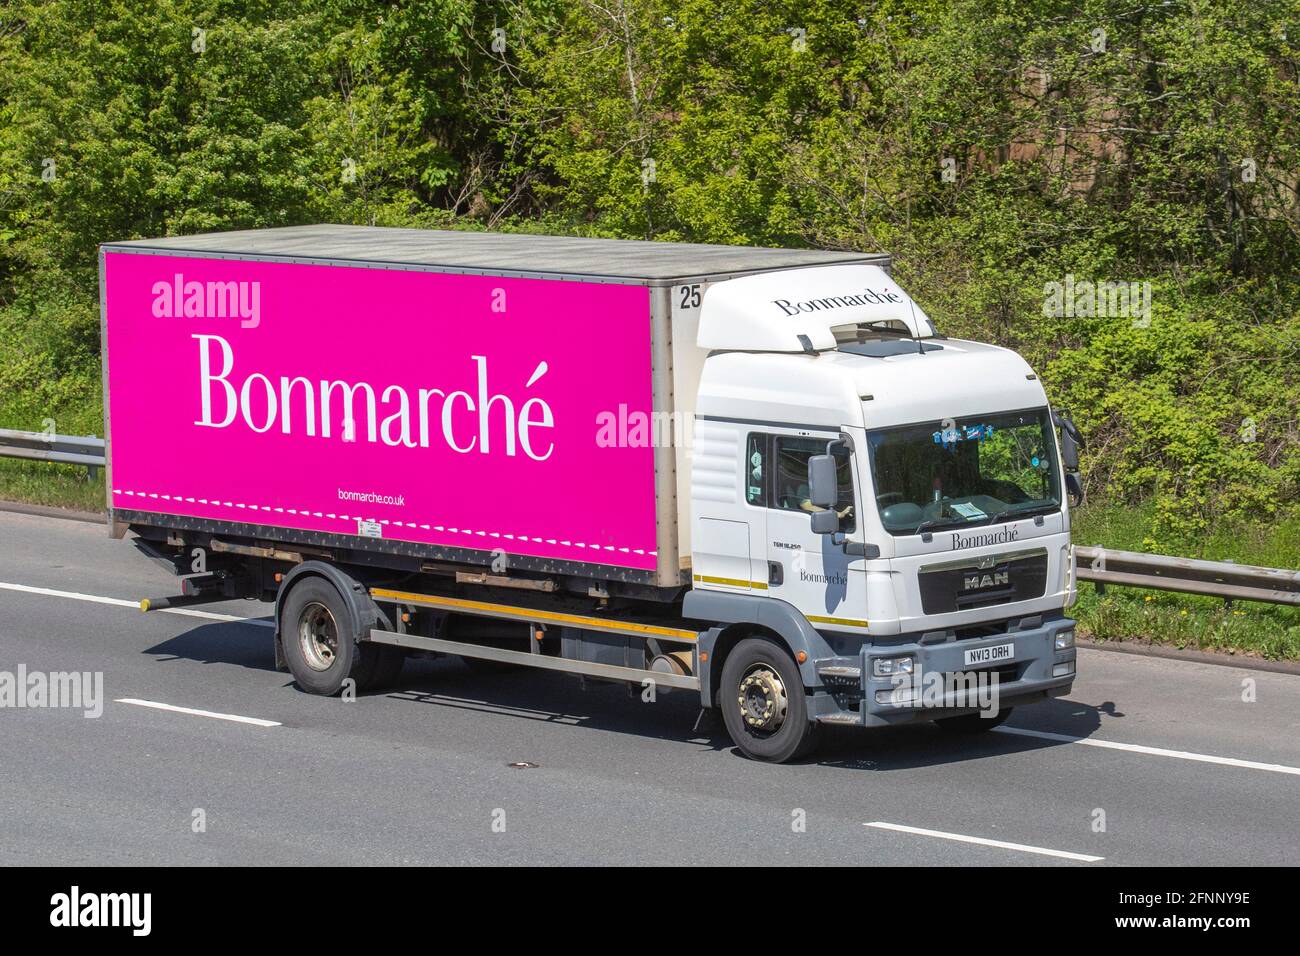 Bonmarche Fashion Cargo & Freight Company, camions de livraison de transport, camion, véhicules lourds, transport, camion, Porte-bagages, véhicule, industrie européenne du transport commercial HGV, M6 à Manchester, Royaume-Uni Banque D'Images